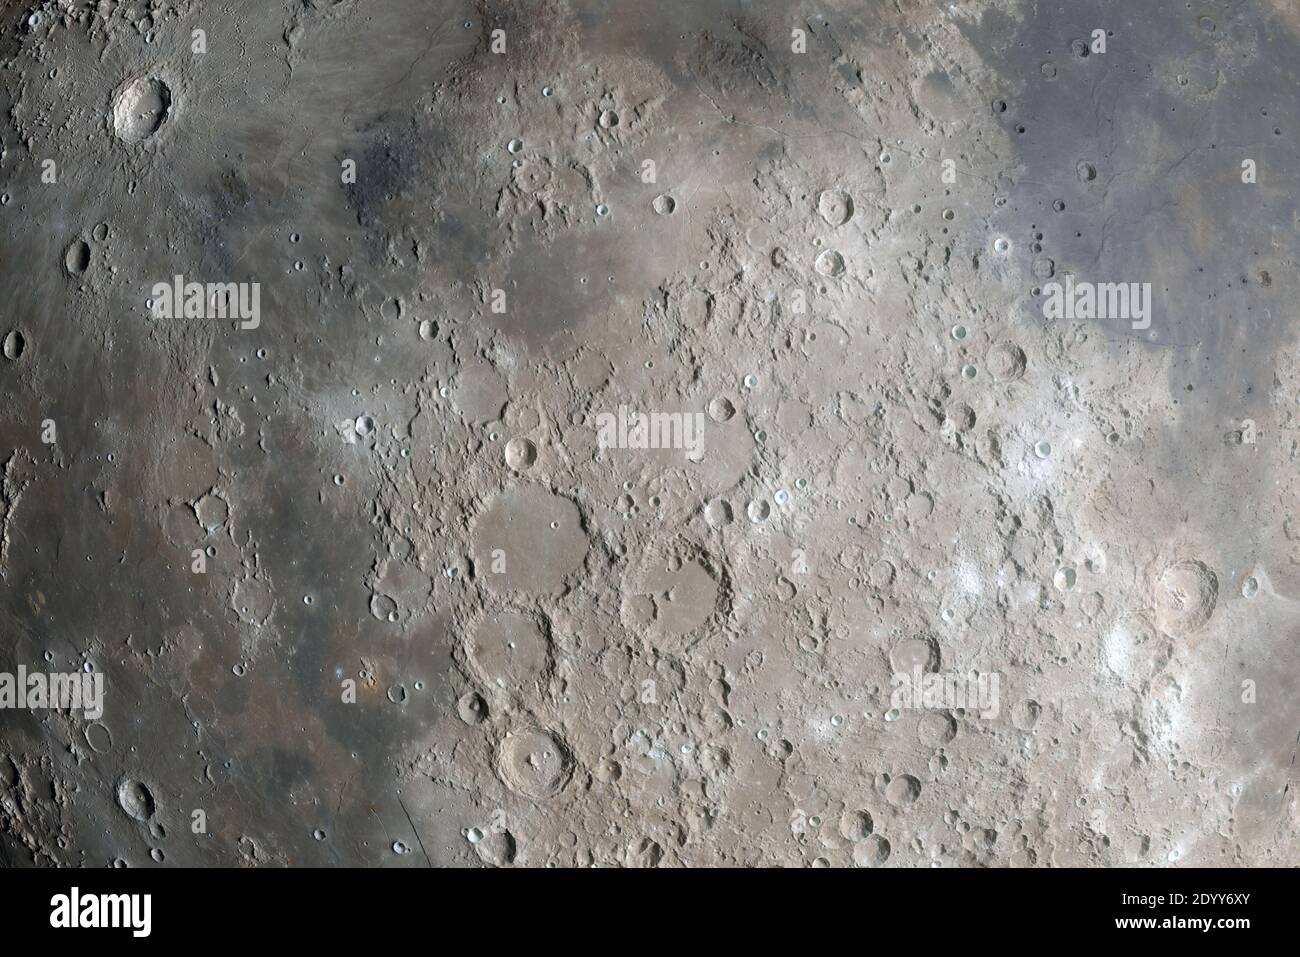 Mond hochauflösende 3d Rendering Illustration Wissenschaft Astronomie, detaillierte Mondkrater Oberfläche, schwarzer Hintergrund Stockfoto